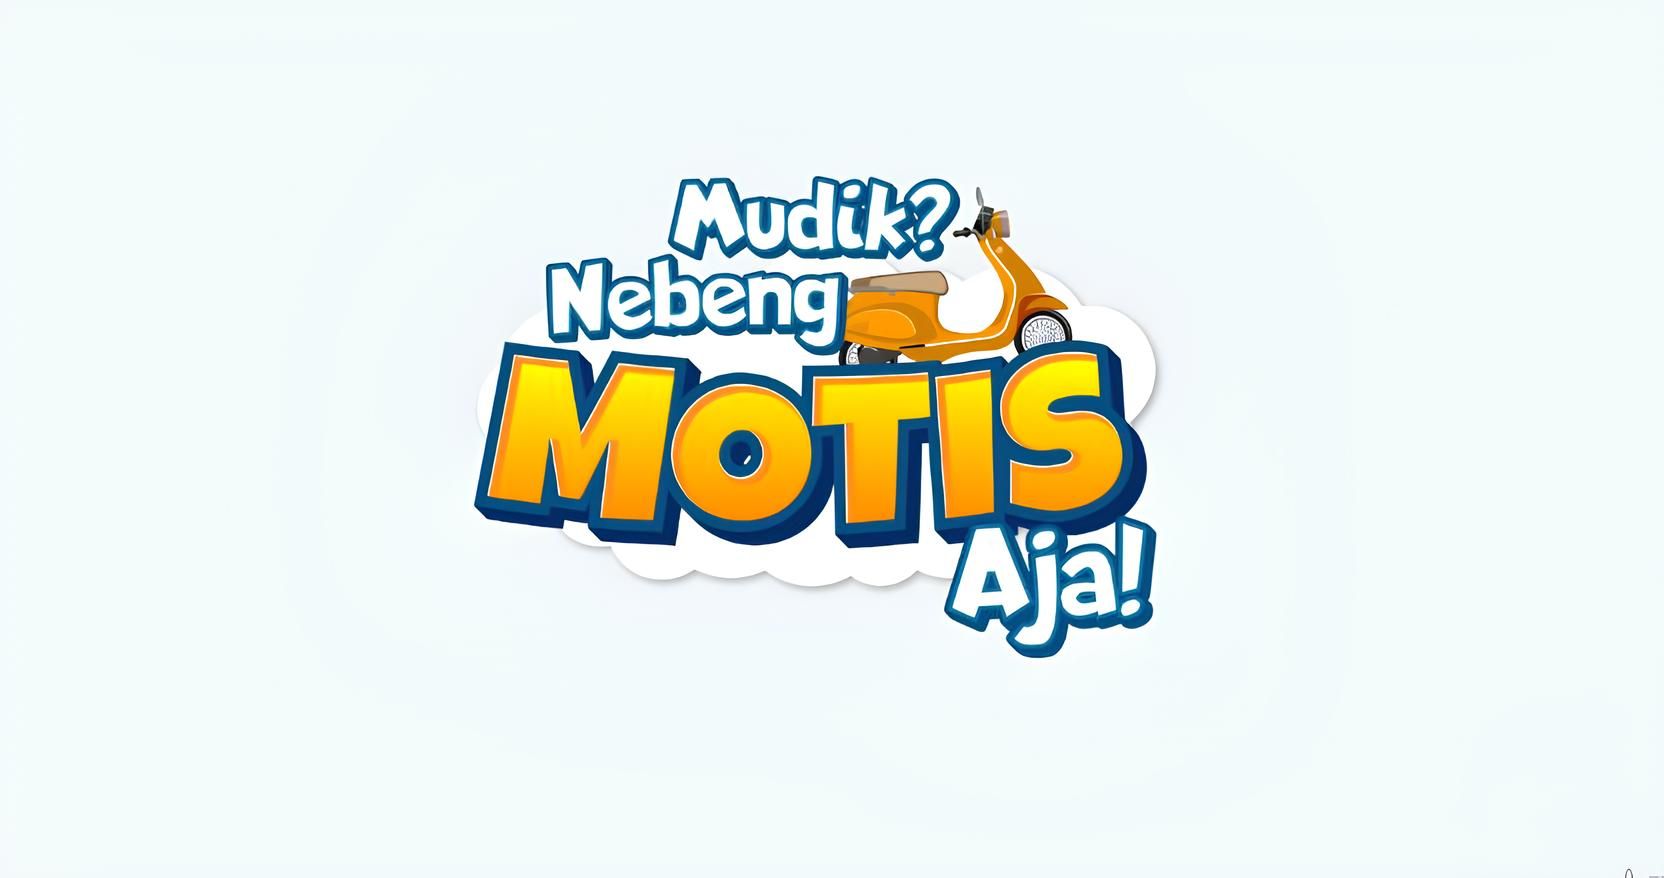 Mudik Motor Gratis (Motis) 2024 dari Kemenhub dibuka hari ini. Simak syarat dan cara daftarnya. Berangkat dari stasiun Jakarta dan Cilegon.